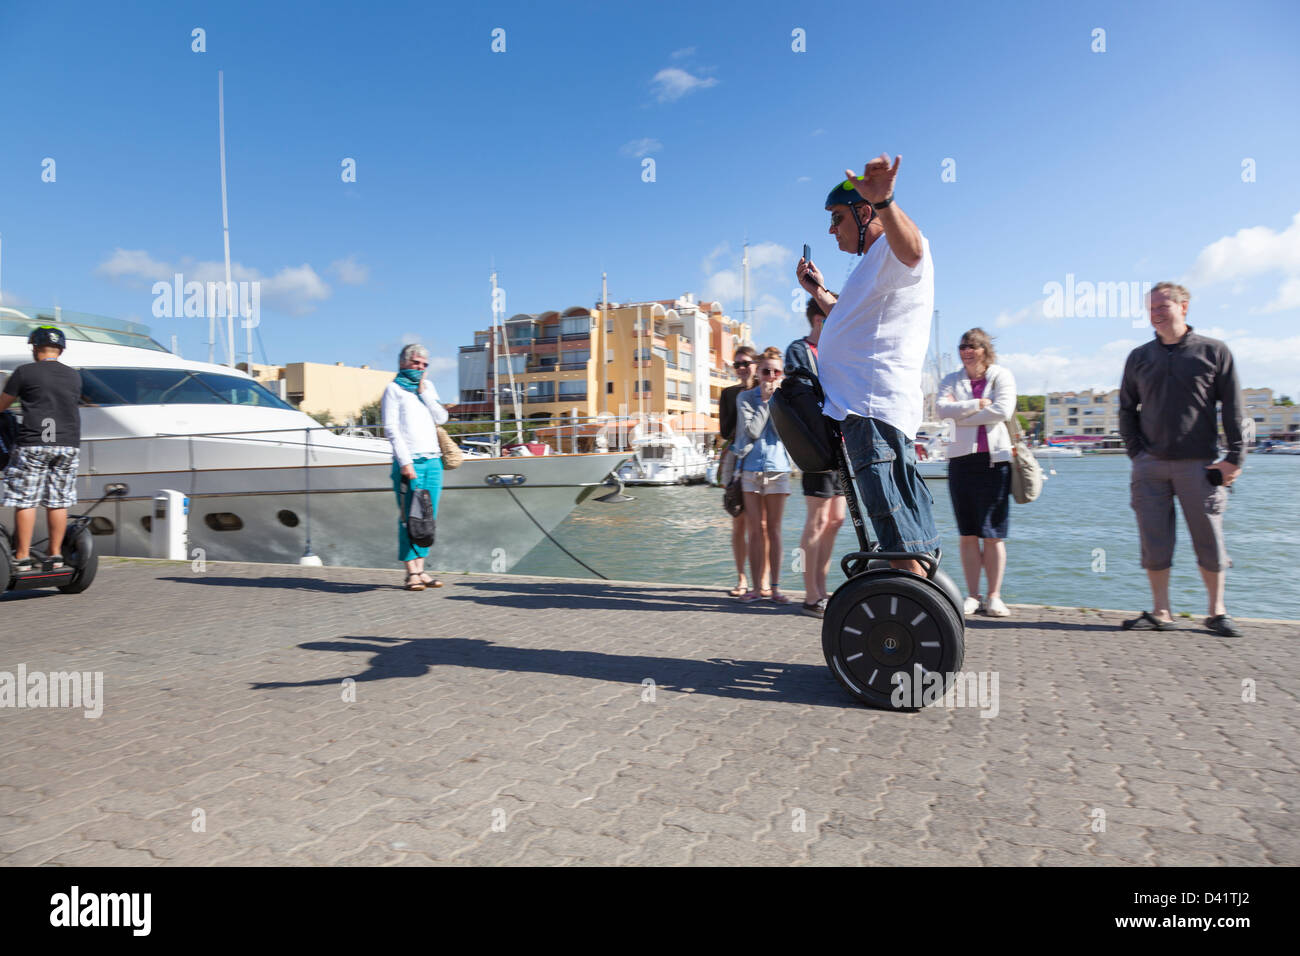 Un touriste explore la marina à Gruissan, France sur son segway, embauchés pendant l'utilisation de son téléphone portable à la vidéo de l'événement. Banque D'Images